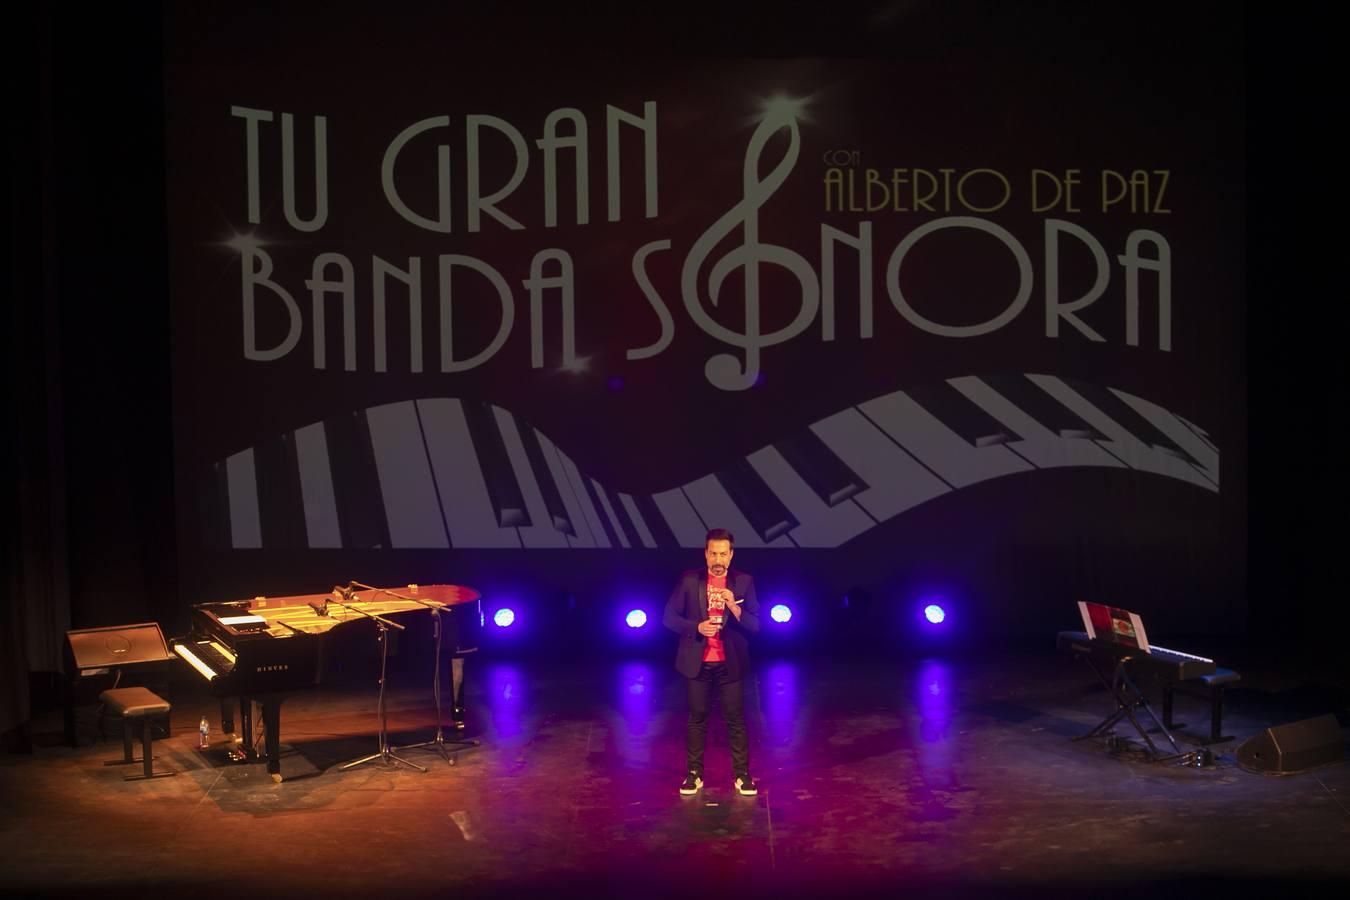 El show de Alberto de Paz en el Teatro Góngora, en imágenes